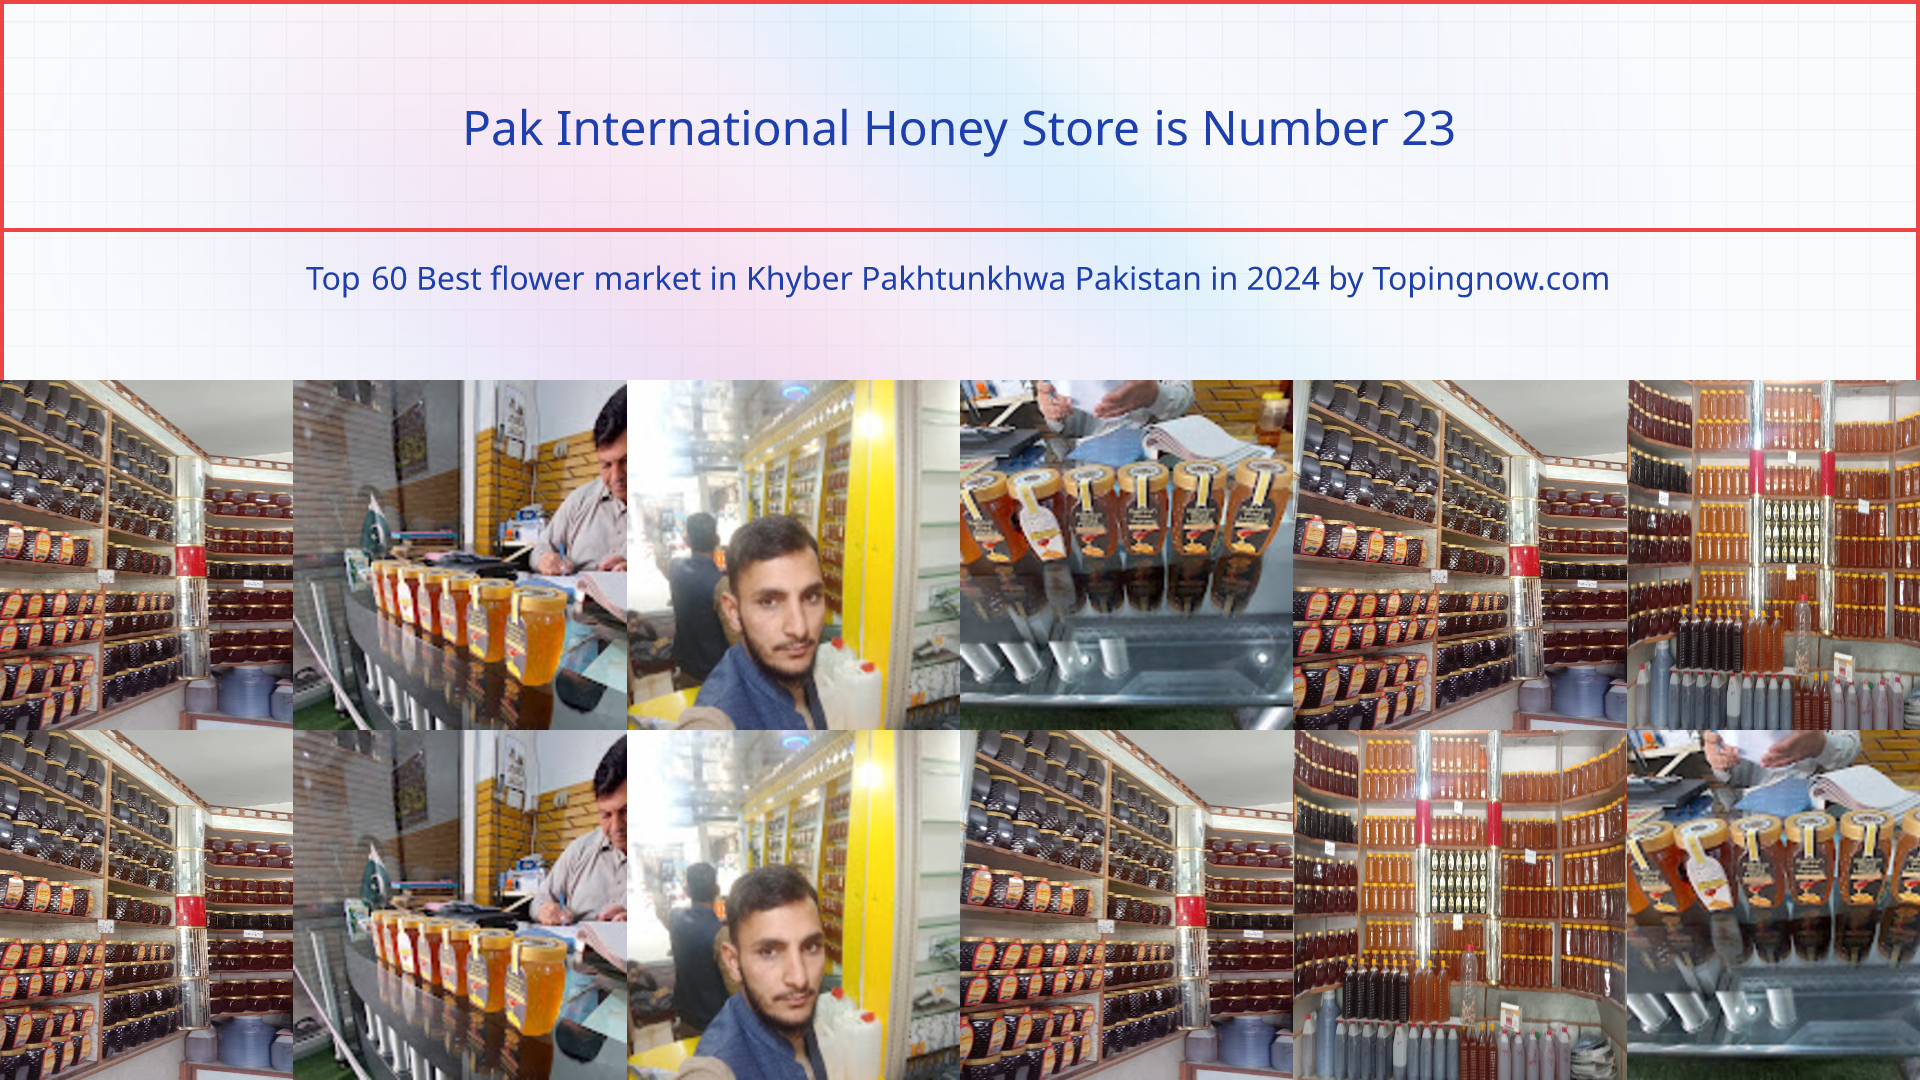 Pak International Honey Store: Top 60 Best flower market in Khyber Pakhtunkhwa Pakistan in 2024